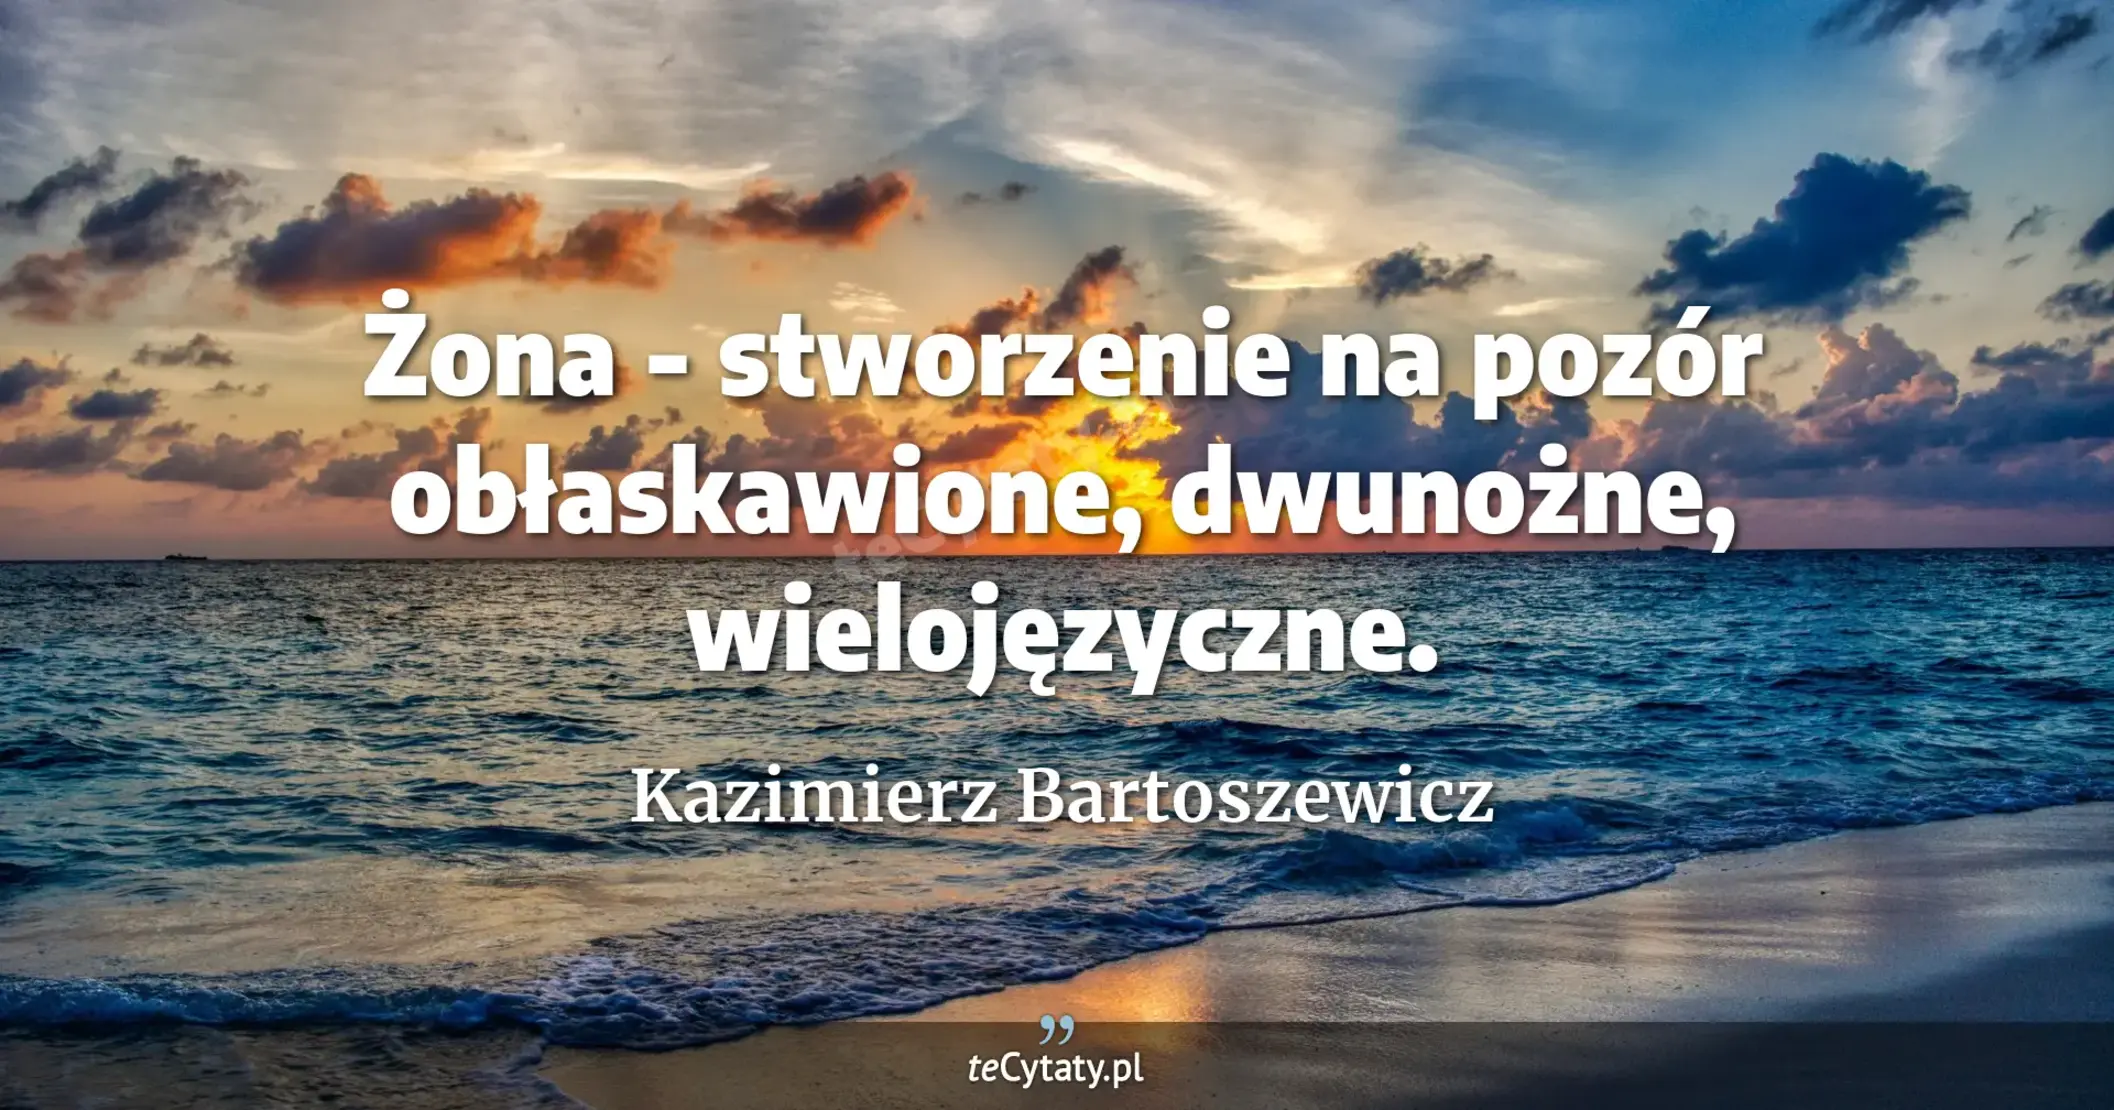 Żona - stworzenie na pozór obłaskawione, dwunożne, wielojęzyczne. - Kazimierz Bartoszewicz